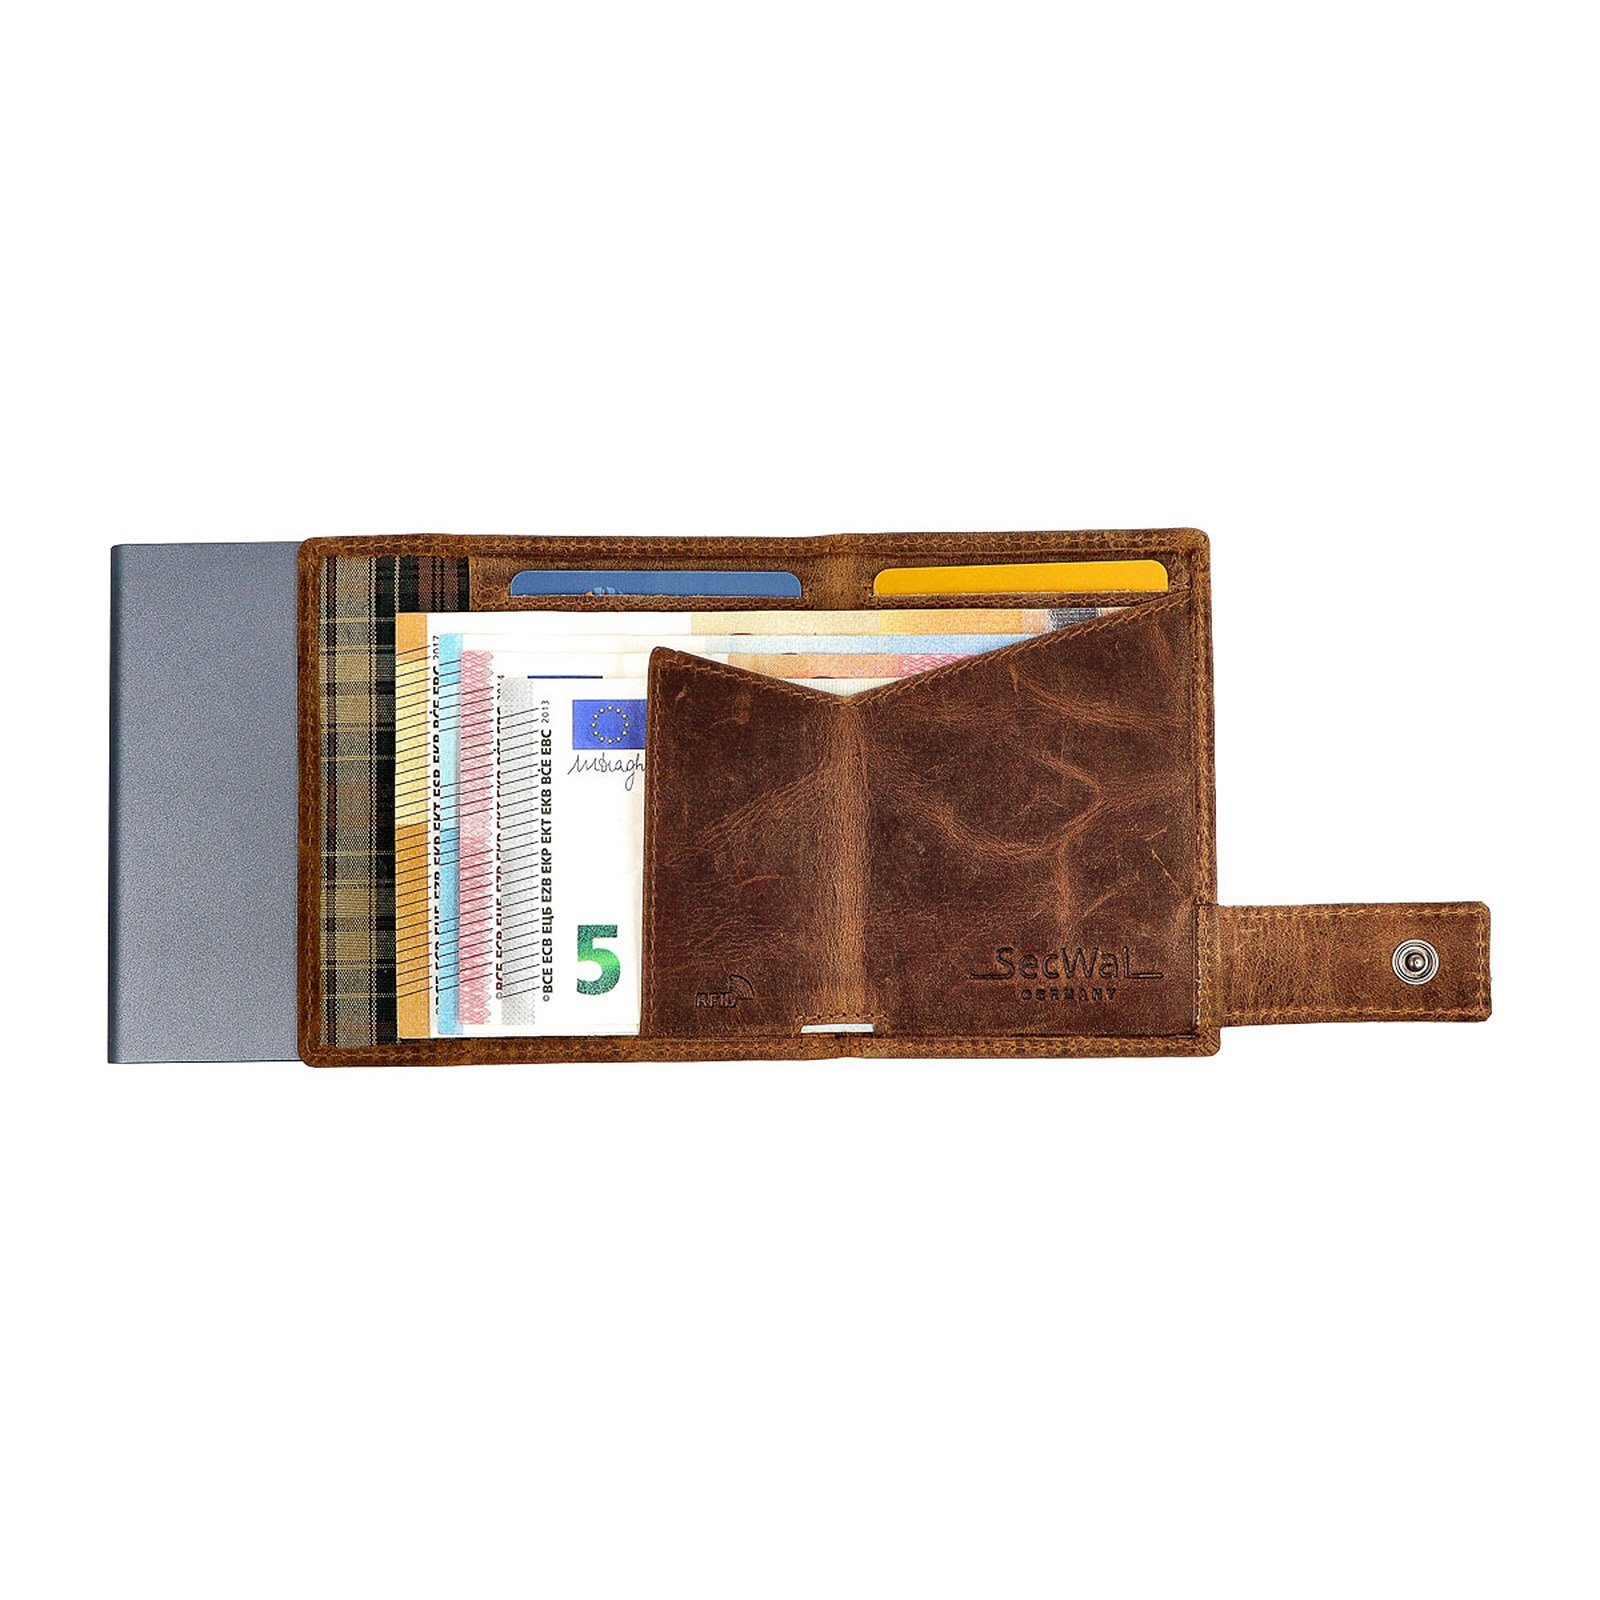 SecWal Geldbörse RFID RFID mit Schutz Münzfach SW3, Leder Hunter Geldbörse Portemonnaie Kartenetui Brown